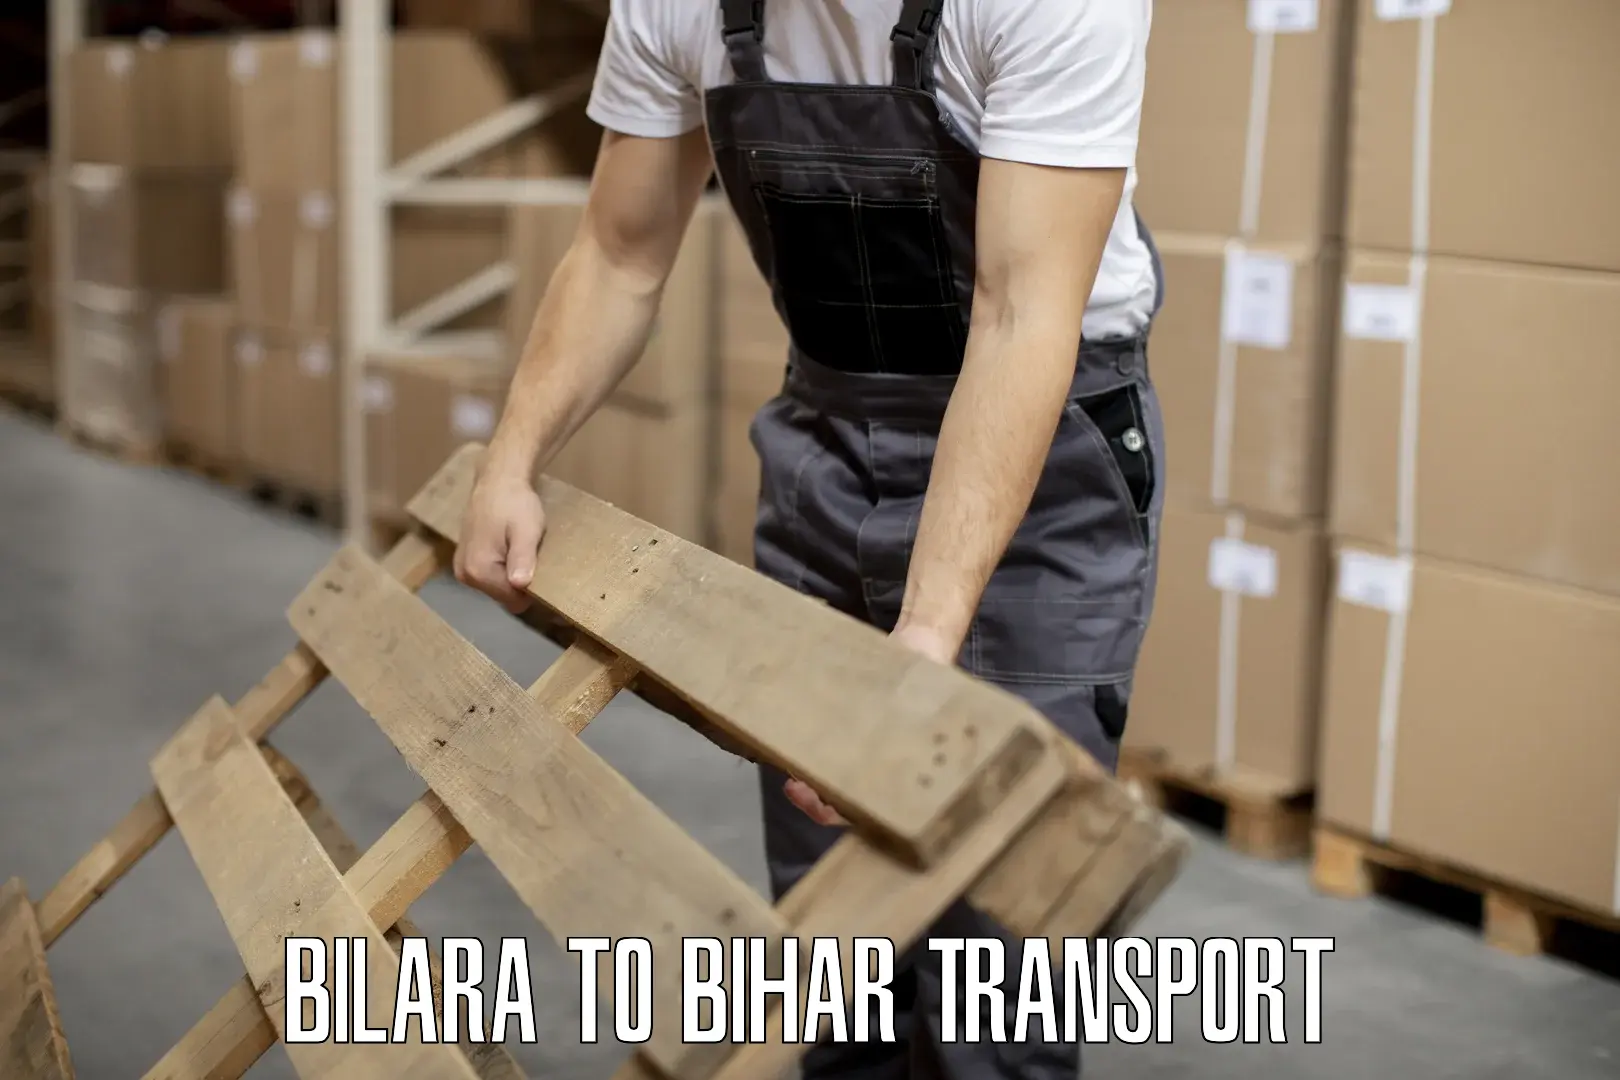 Commercial transport service Bilara to Bihar